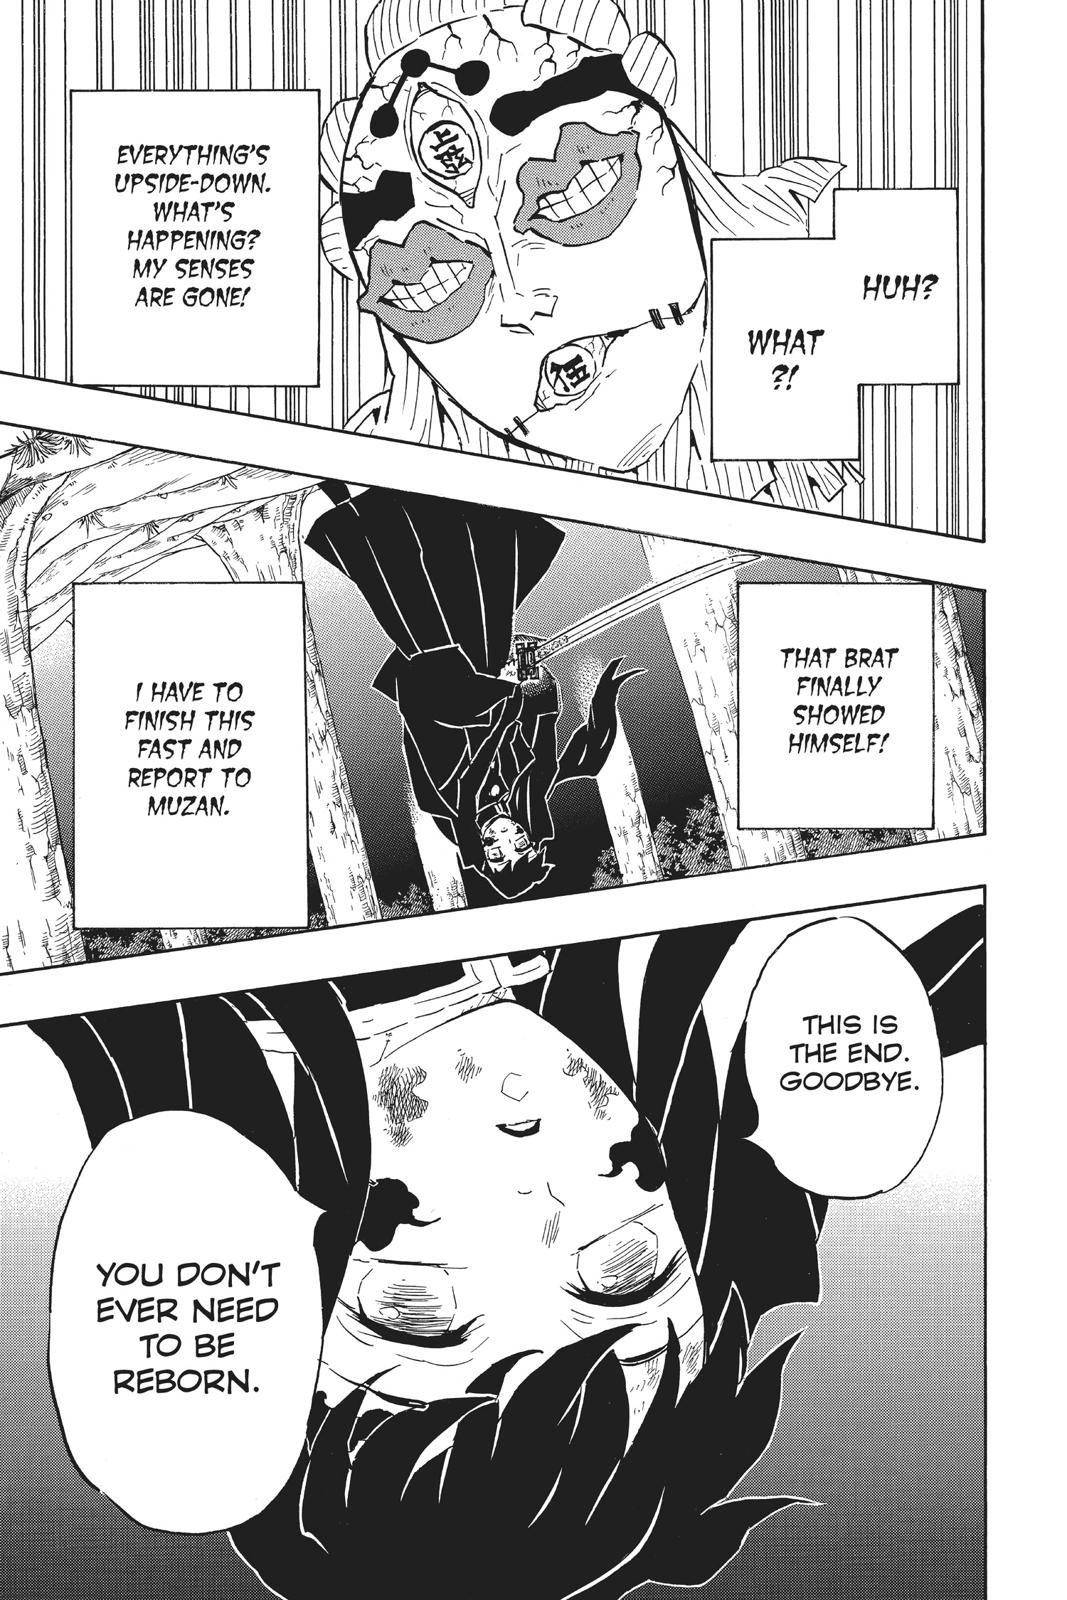 Demon Slayer Manga Manga Chapter - 121 - image 7